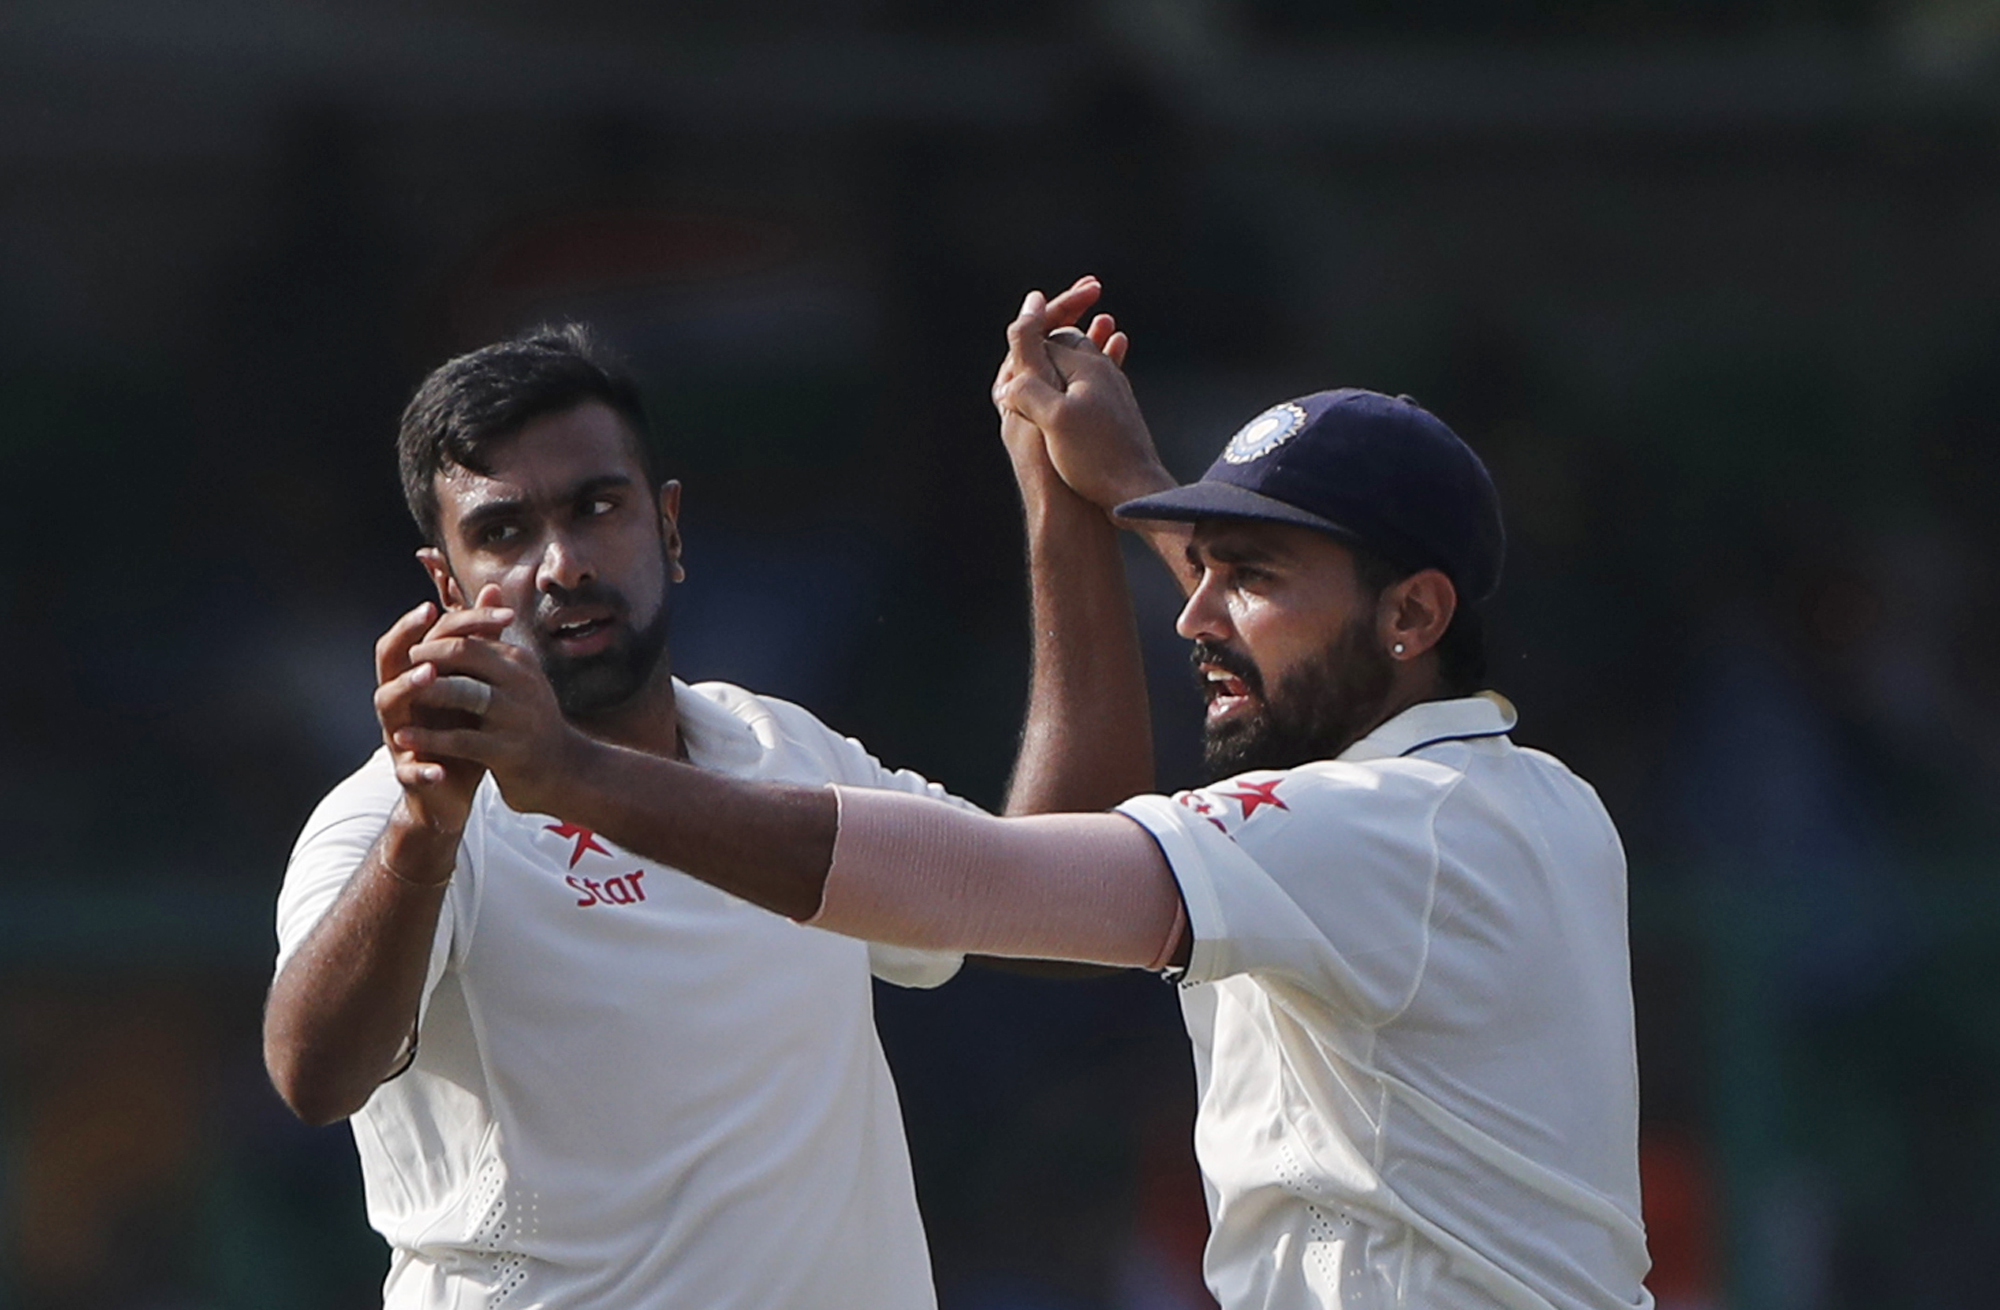 इंग्लैंड के विरुद्ध मैच जीताऊ प्रदर्शन के बाद अश्विन और मुरली विजय ने बताया चेन्नई में क्या होगी भारत की रणनीति 1